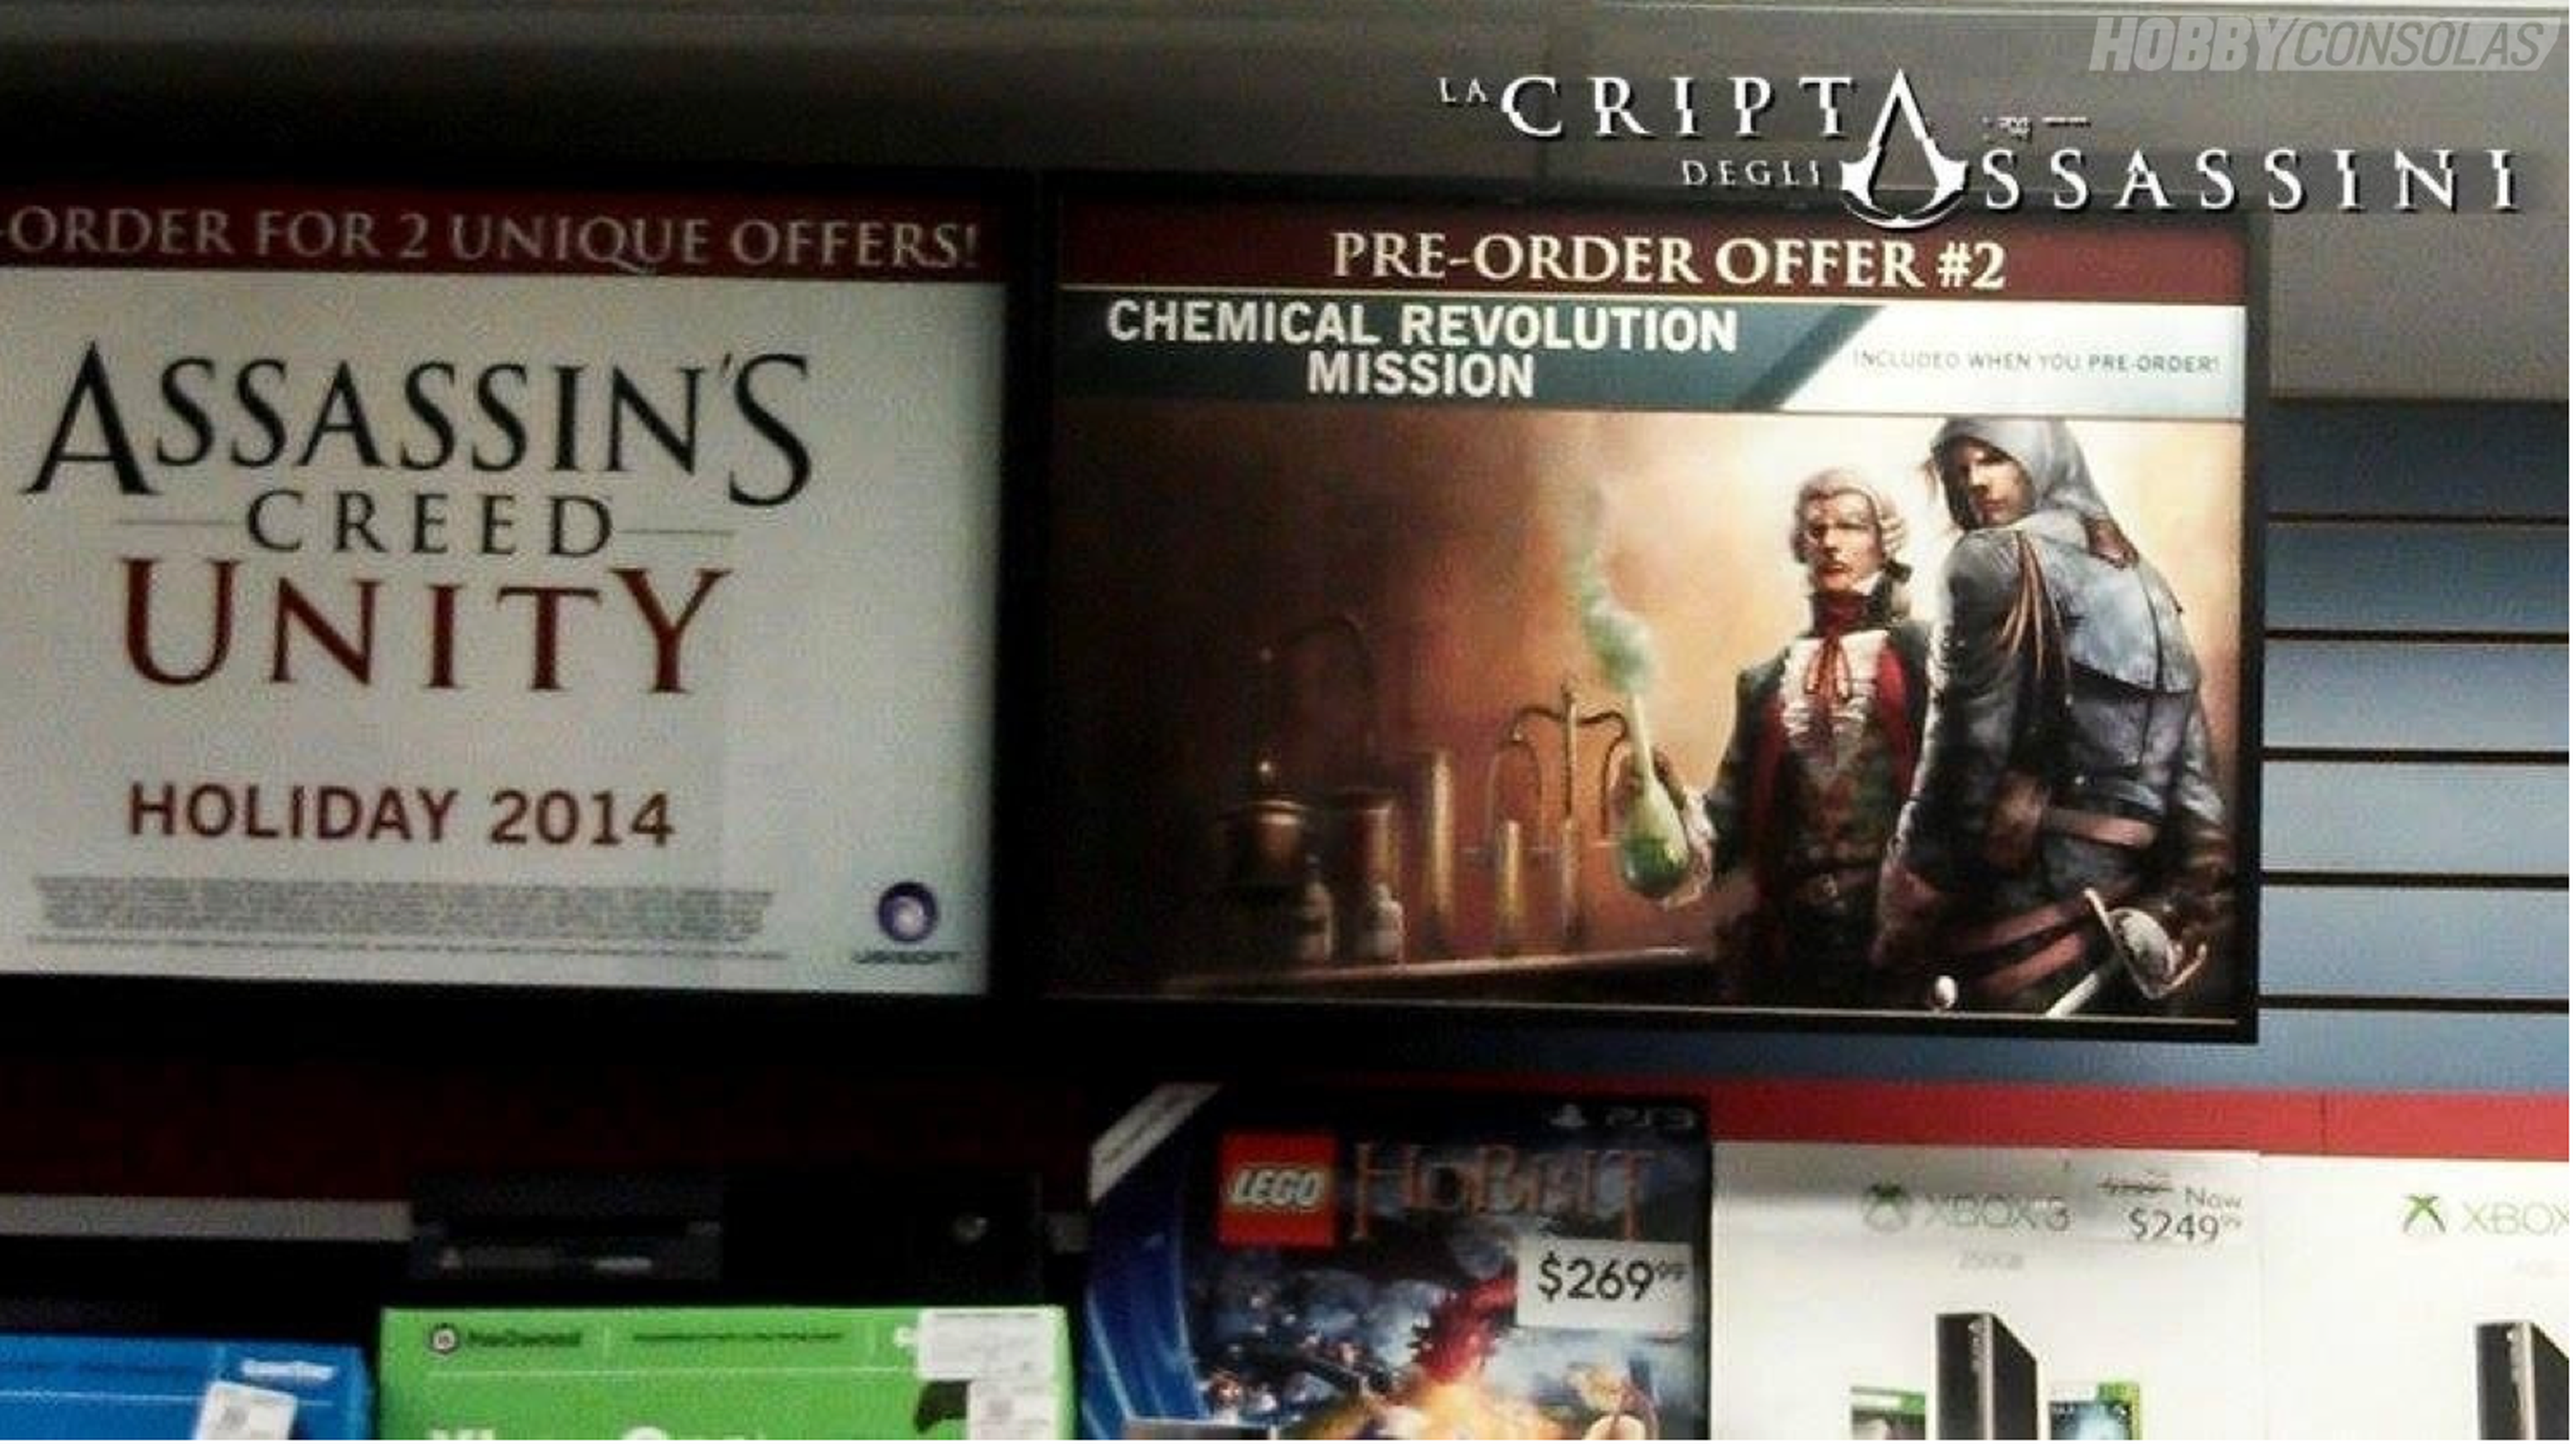 E3 2014: Filtrado un cartel publicitario de Assassin's Creed Unity y una misión